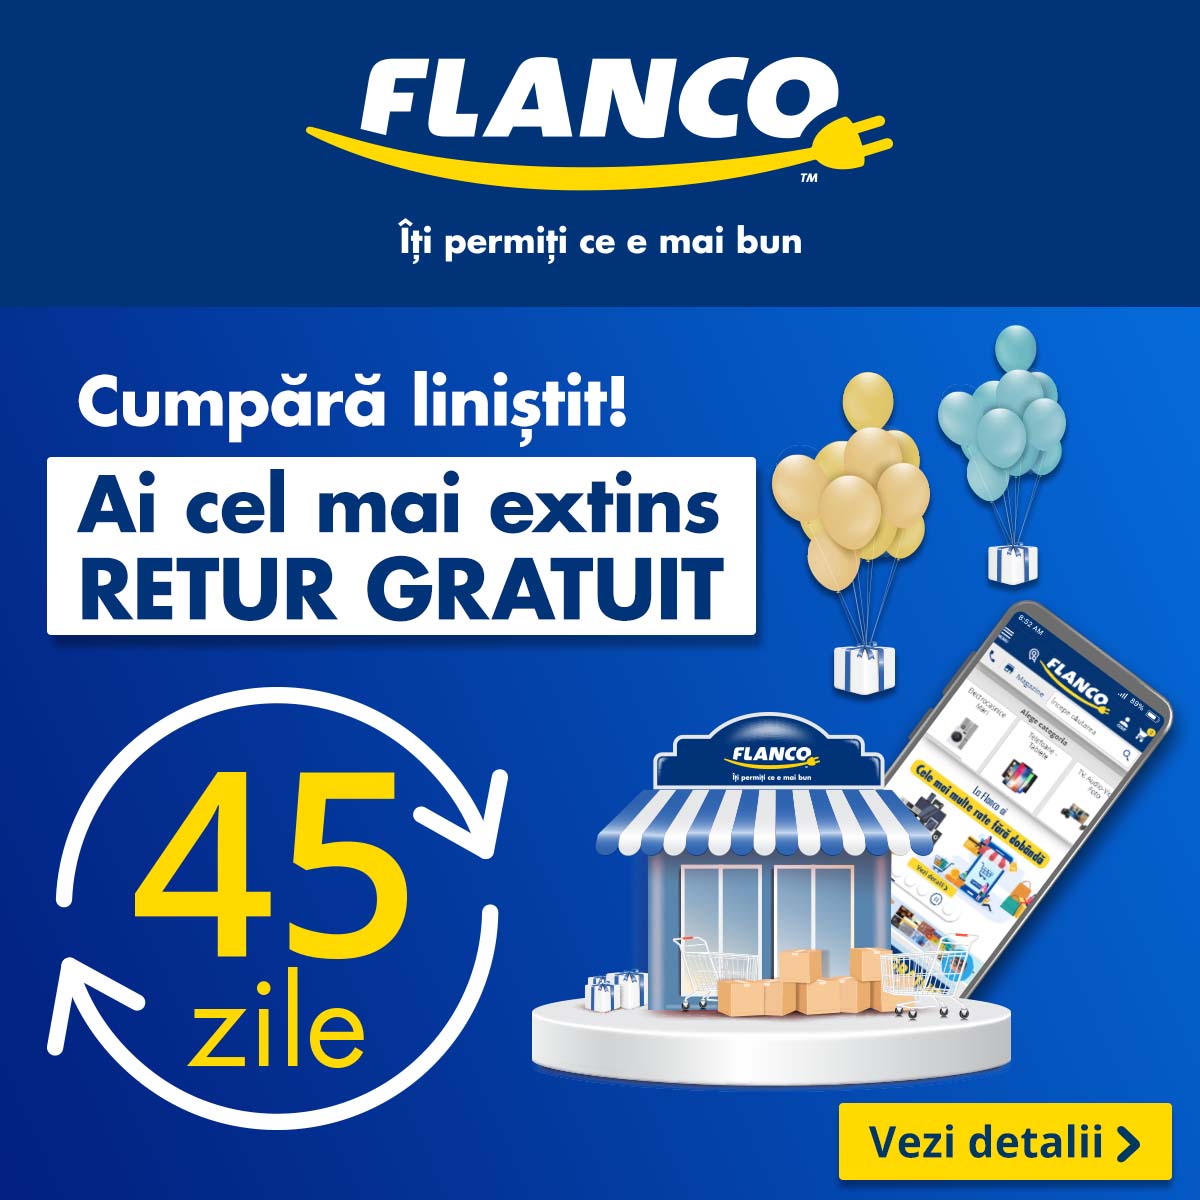 Flanco lansează cea mai extinsă perioadă de retur gratuit din retailul electro-IT